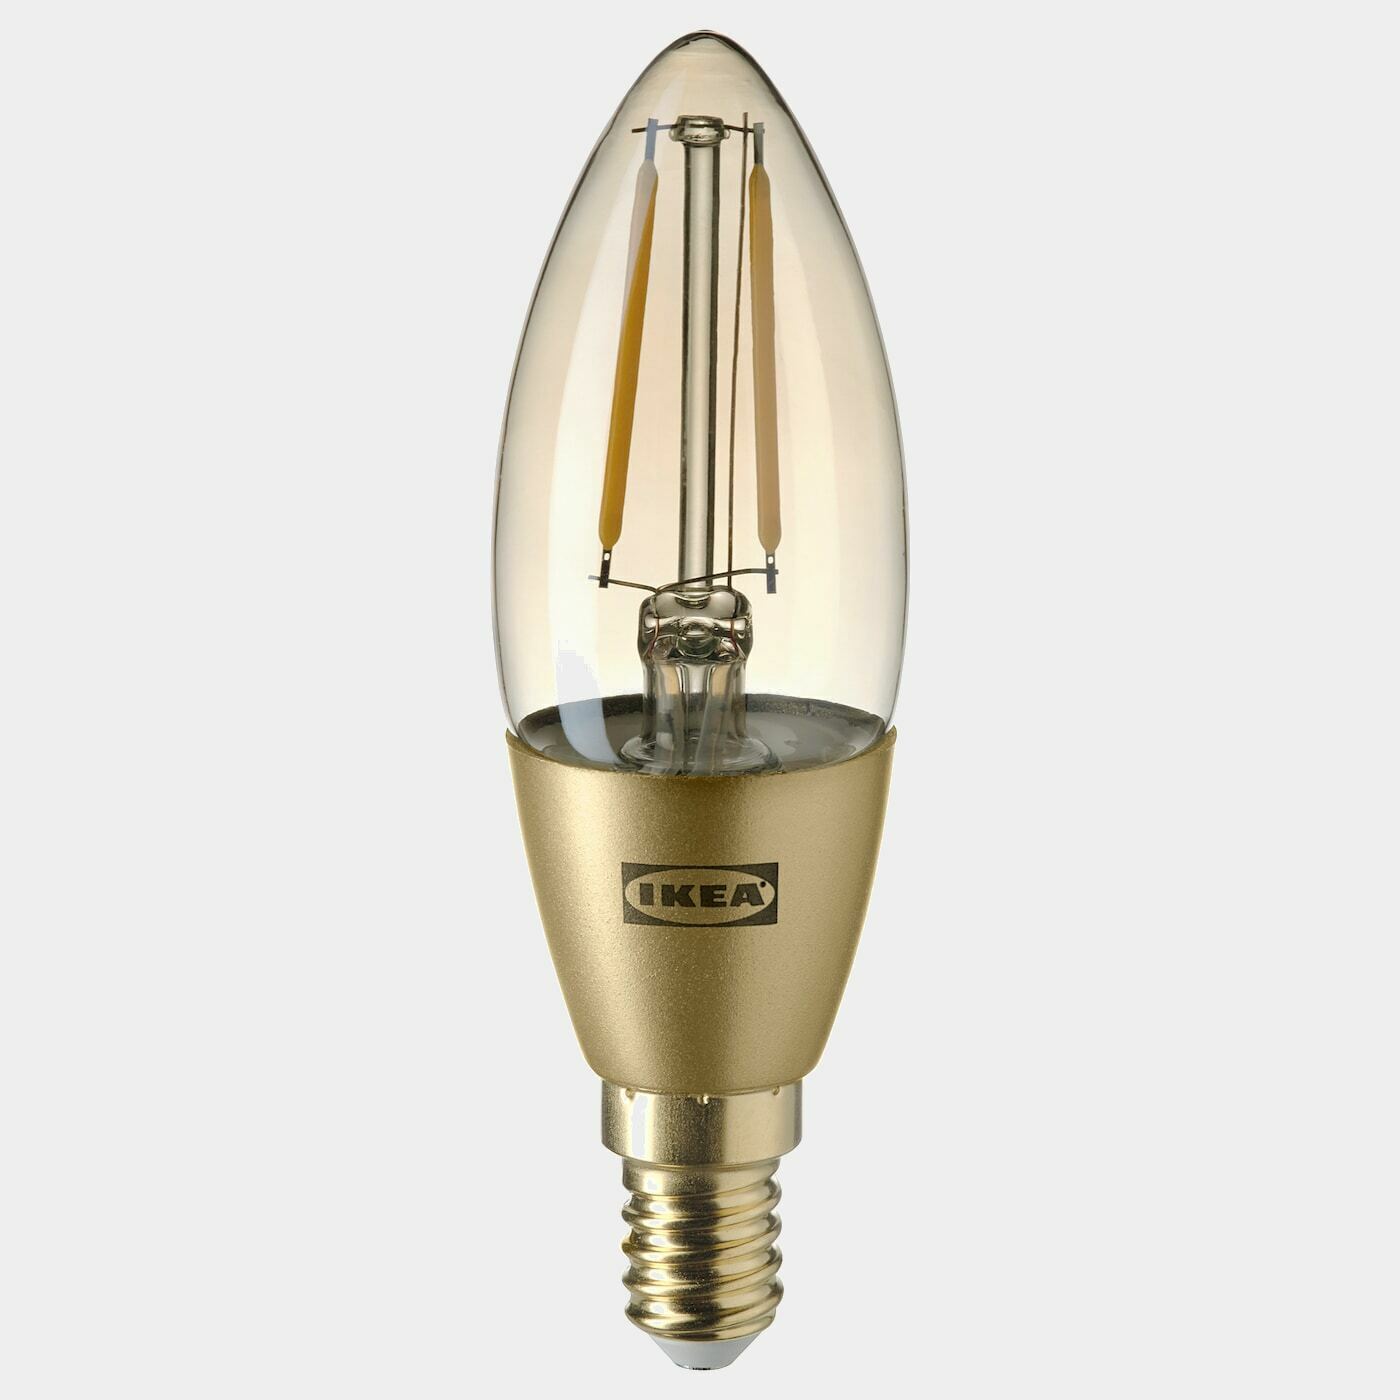 ROLLSBO LED-Leuchtmittel E14 200 lm  -  - Beleuchtung Ideen für dein Zuhause von Home Trends. Beleuchtung Trends von Social Media Influencer für dein Skandi Zuhause.